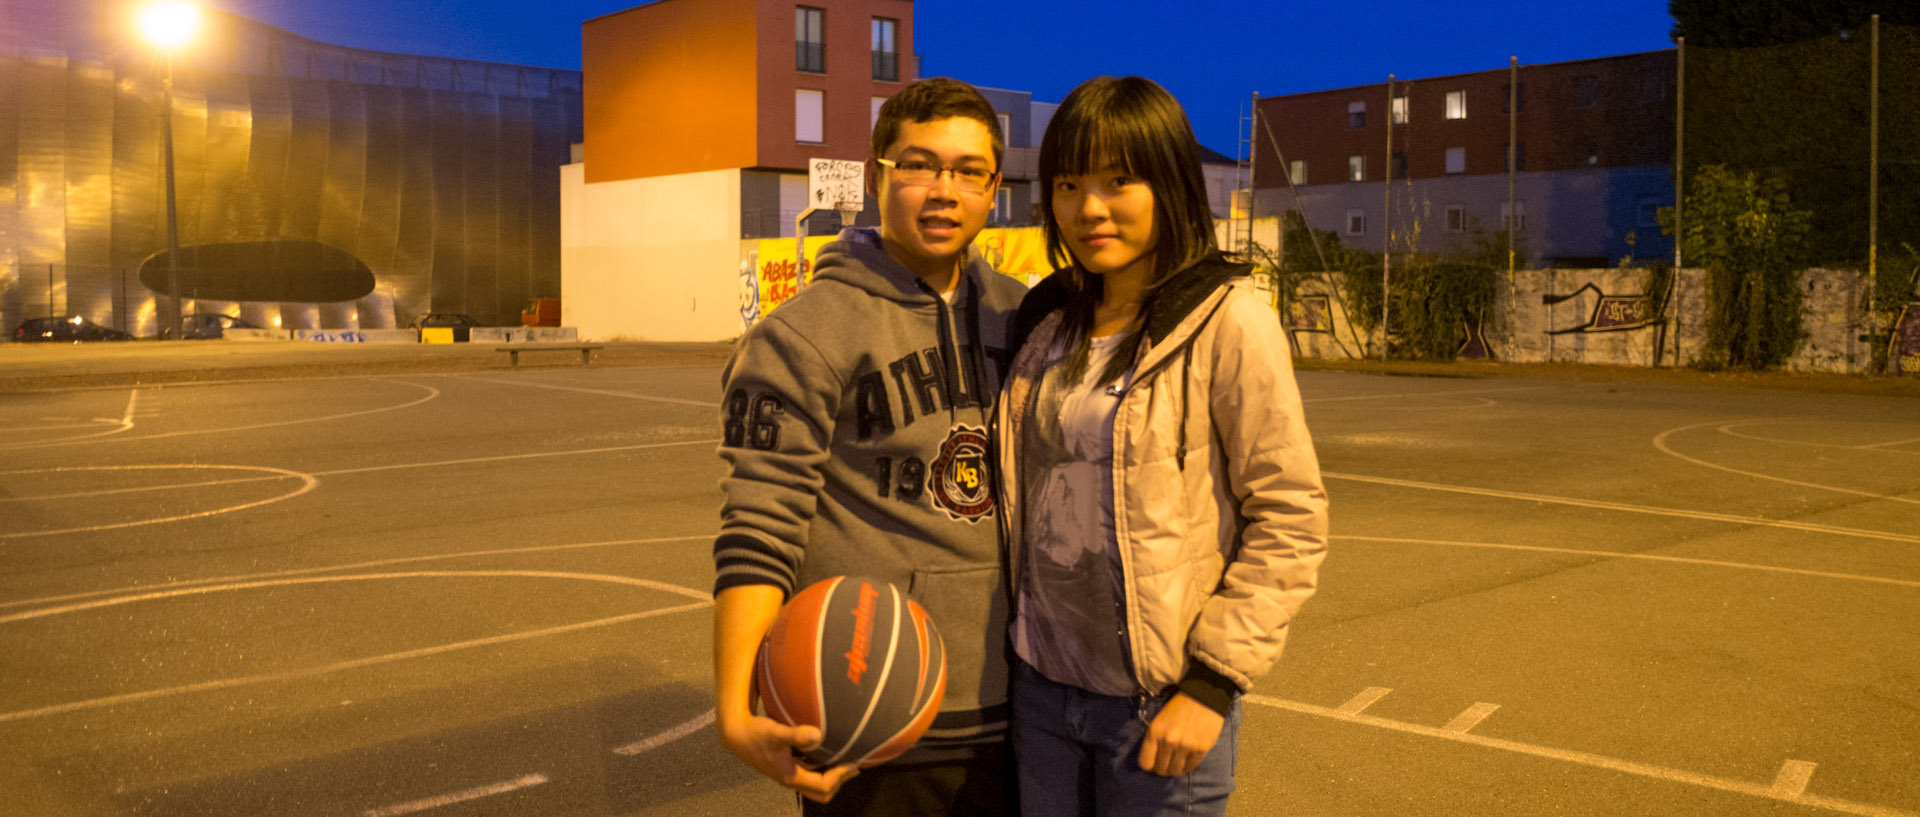 Etudiants vietnamiens jouant au basket, rue de Wagram, à Lille.